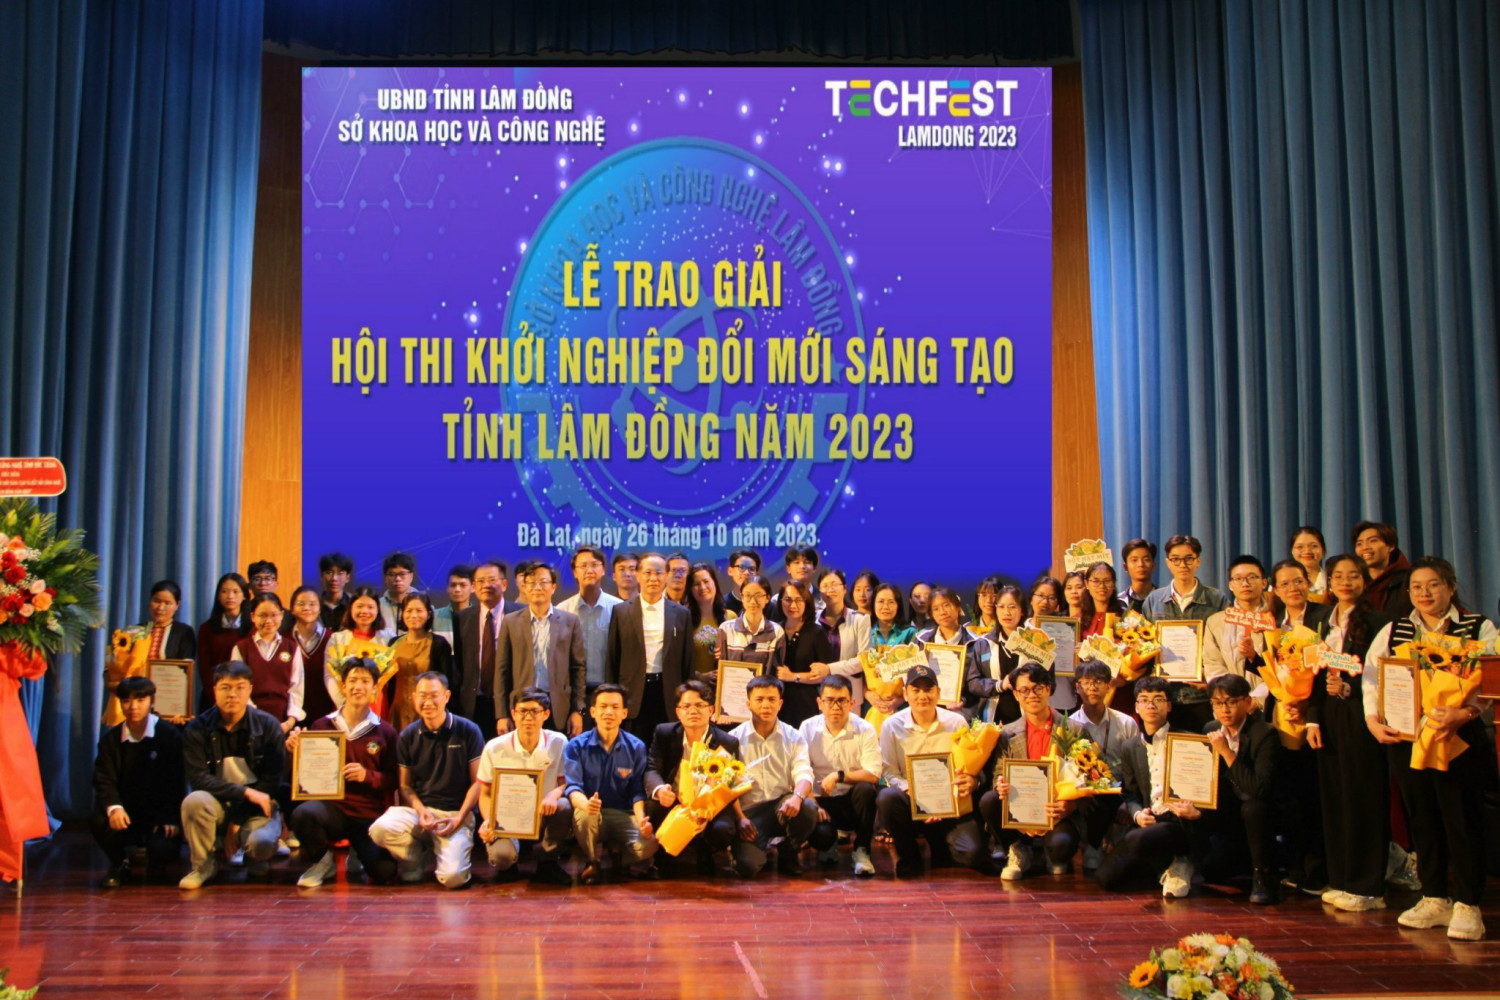 Chung kết Hội thi Khởi nghiệp đổi mới sáng tạo tỉnh Lâm Đồng năm 2023 (Techfest Lâm Đồng 2023).